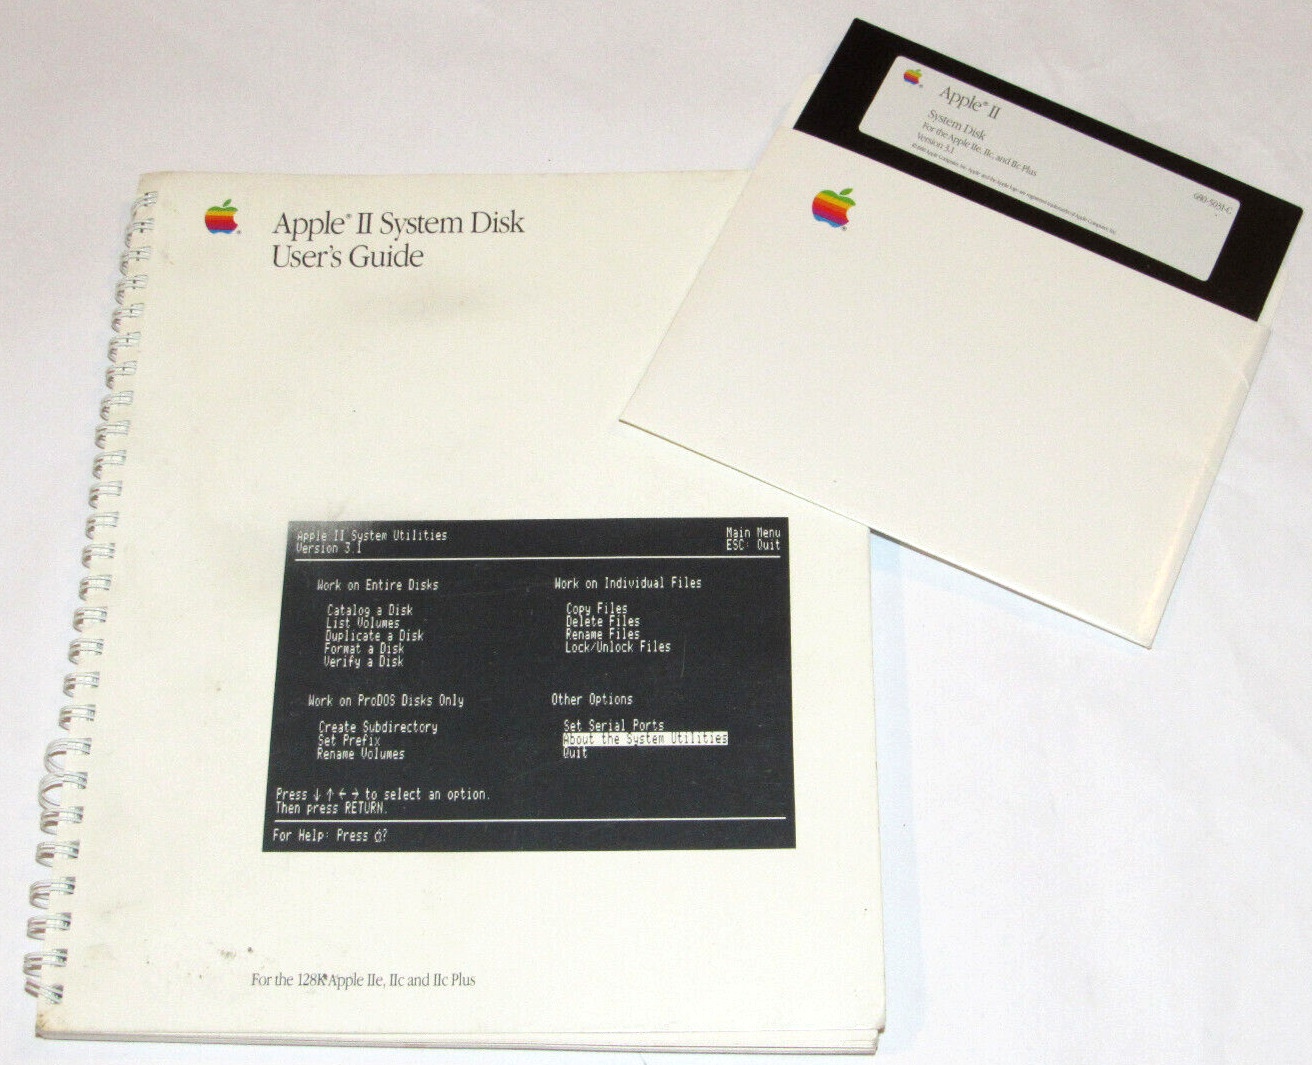 VTG 1988 APPLE II SYSTEM DISK USER'S GUIDE 128K APPLE IIe, IIc, IIc PLUS W/DISK